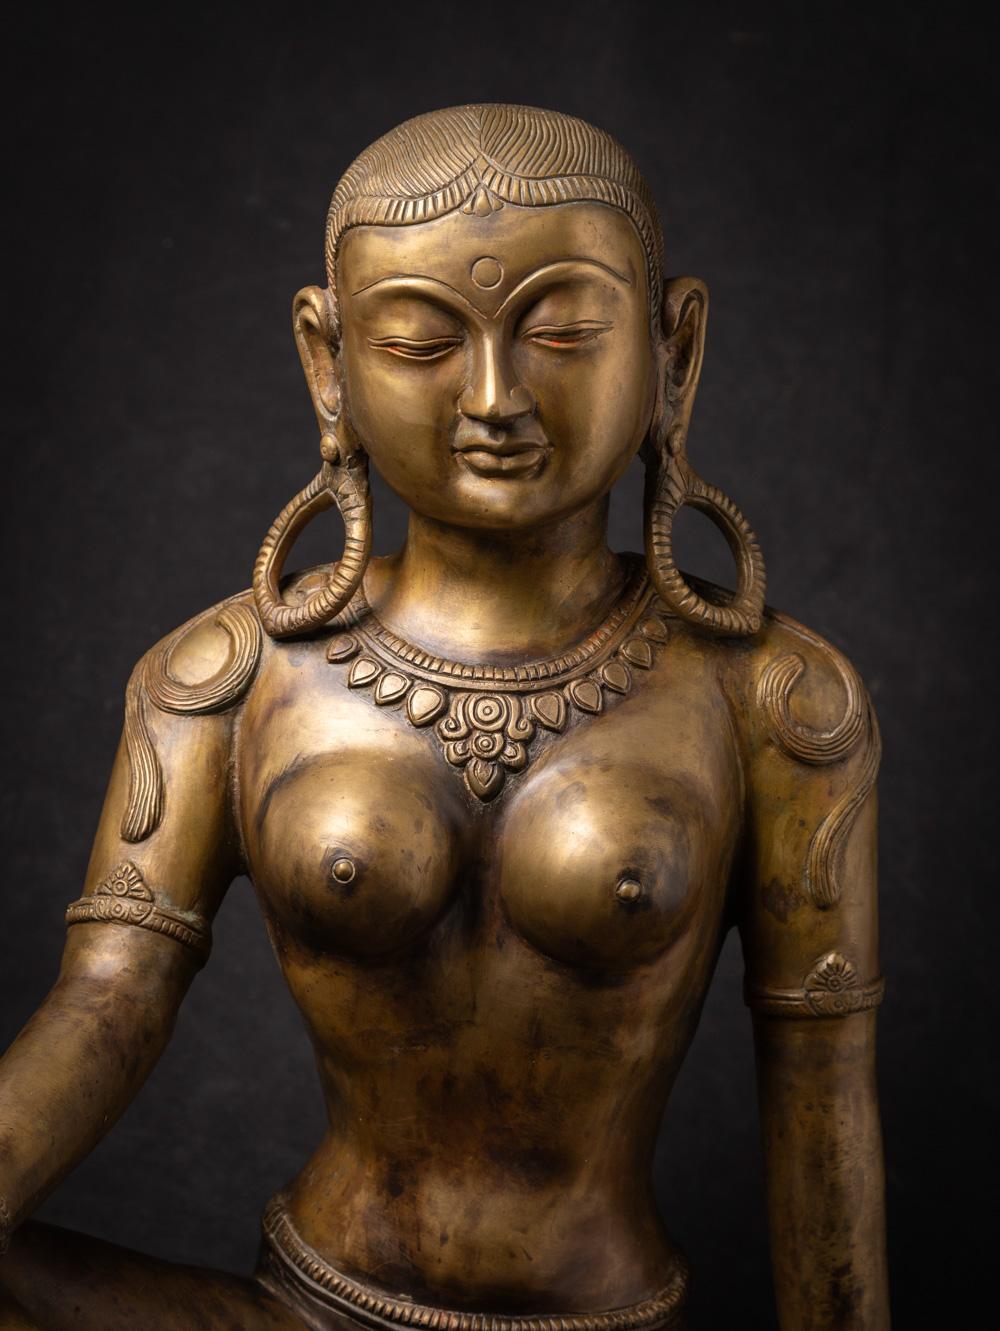 MATERIAL : Bronze
47 cm hoch
43 cm breit und 37,2 cm tief
Mit einem schönen Ausdruck!
Ende des 20. Jahrhunderts
Gewicht: 14,4 kg
Mit Ursprung in Nepal
Nr: PARV-232